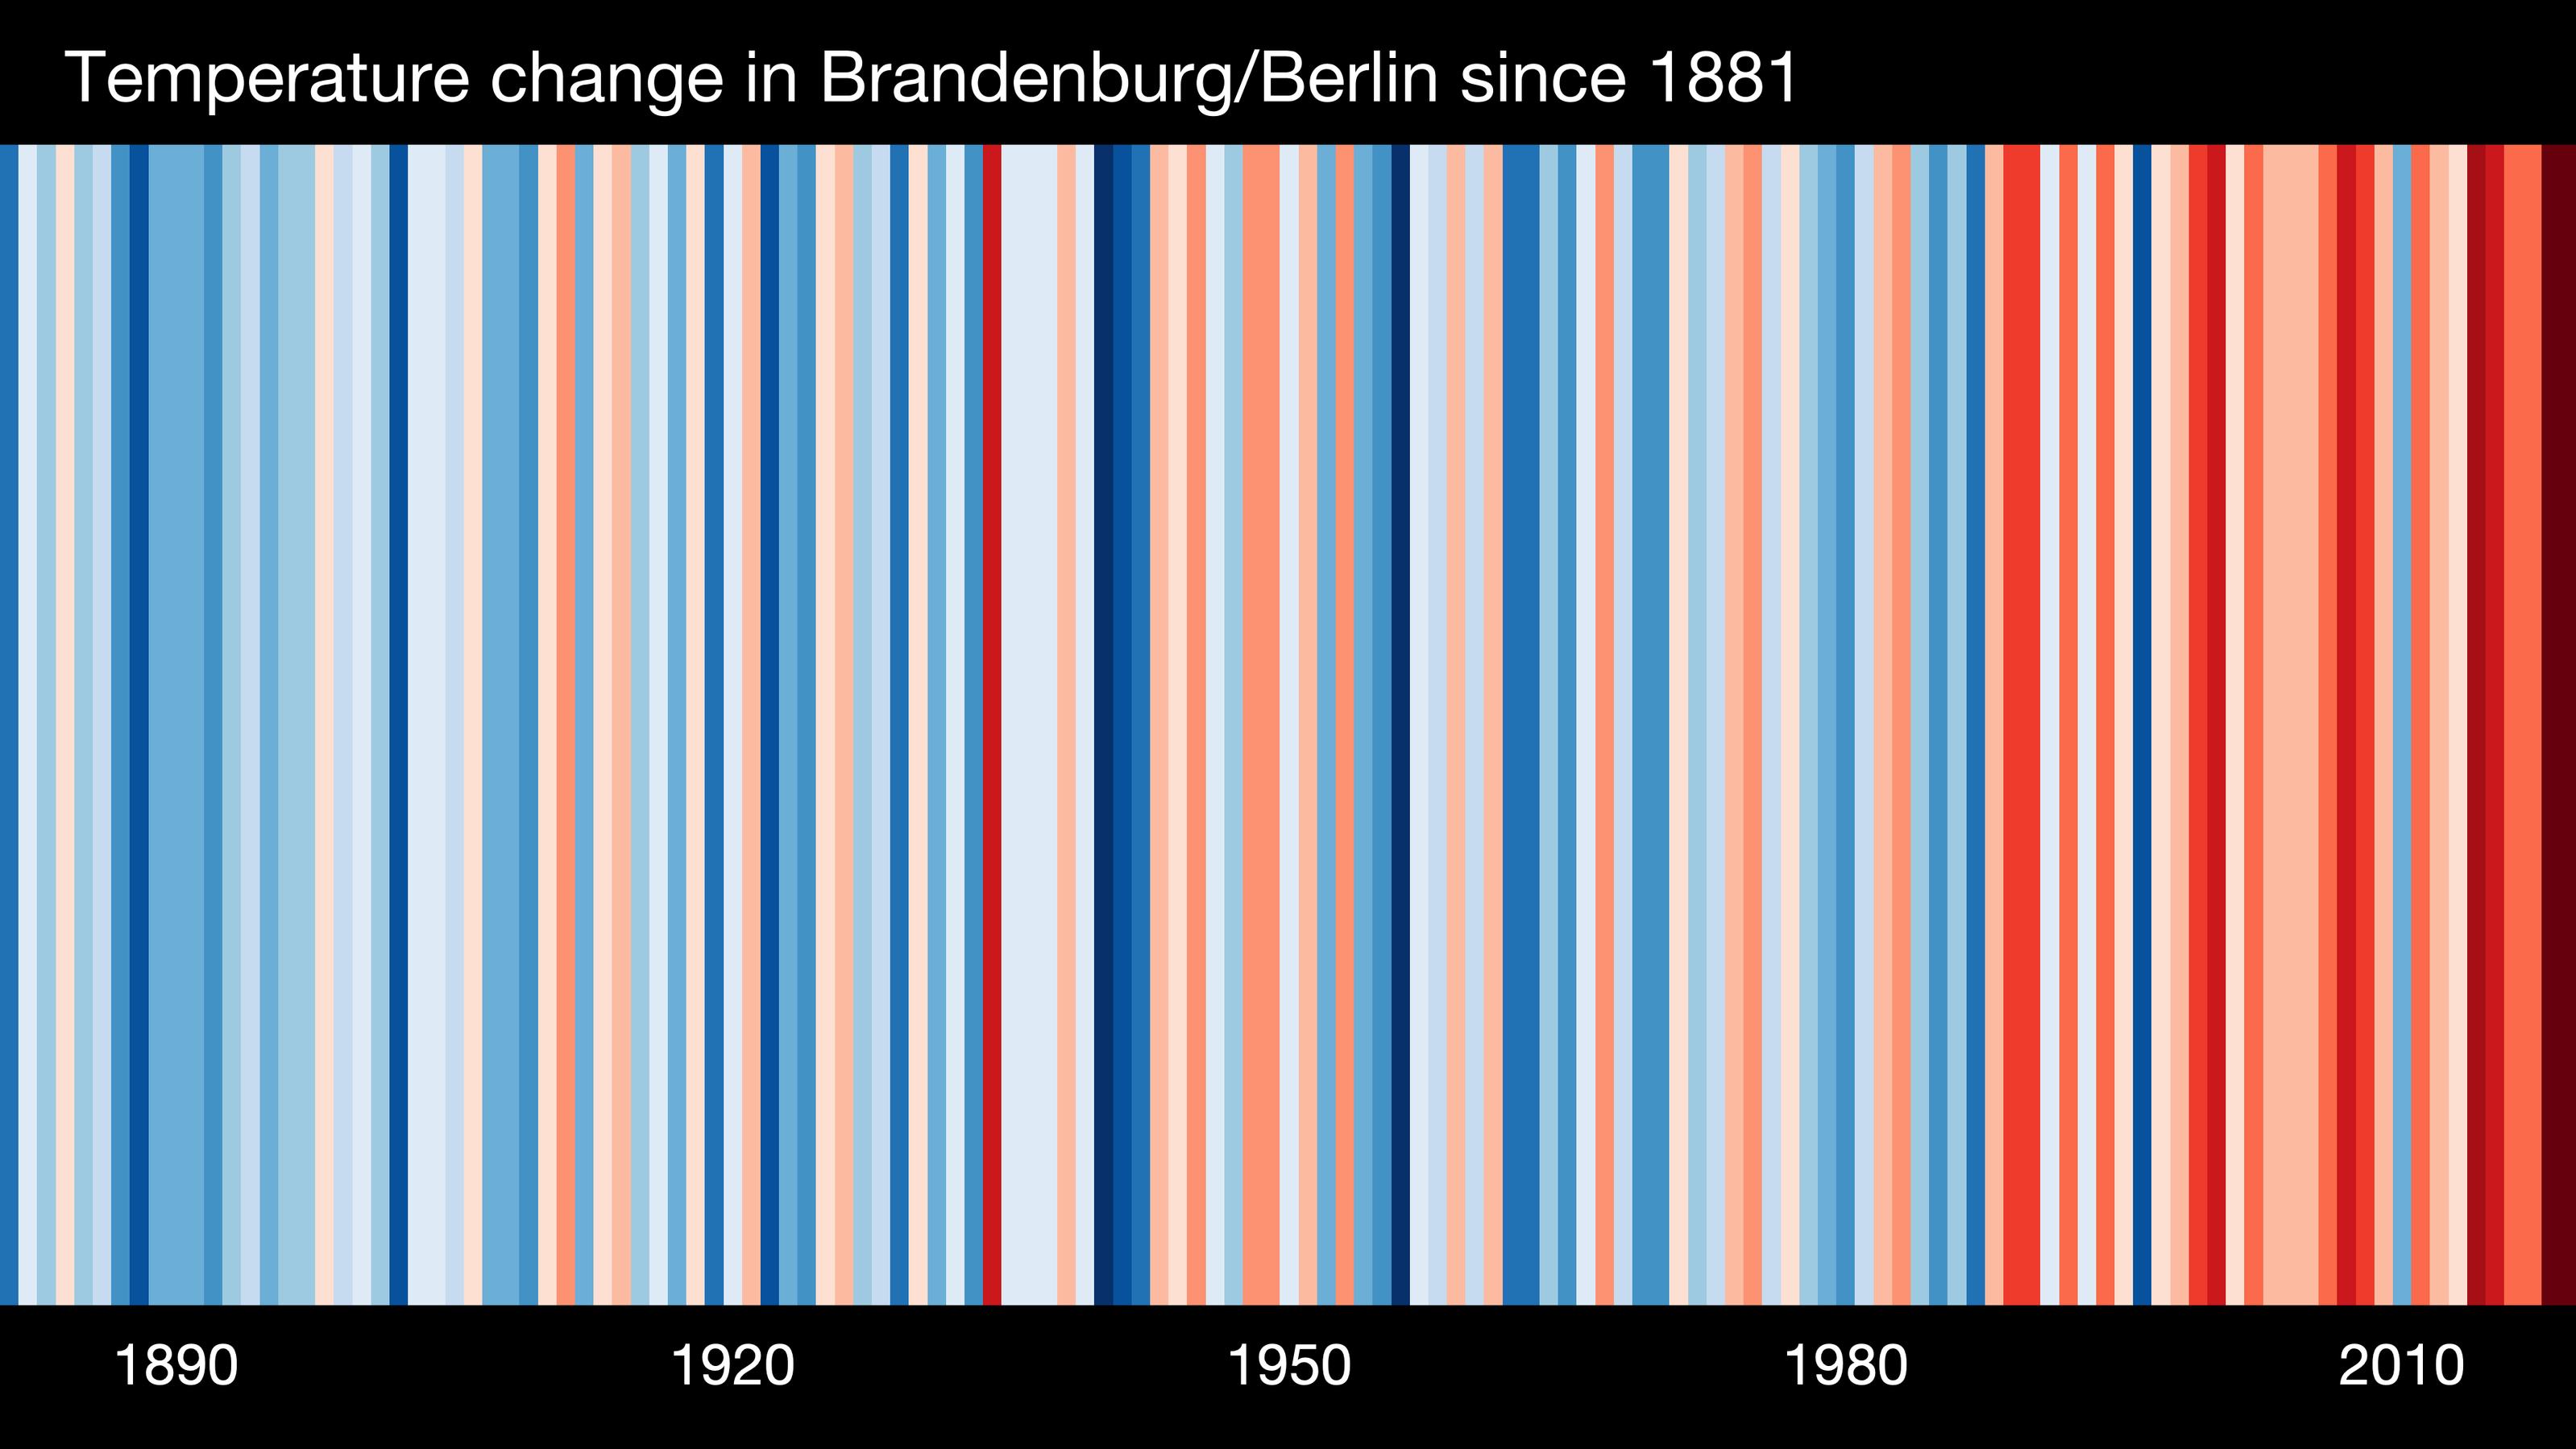 Der Barcode für Brandenburg und Berlin